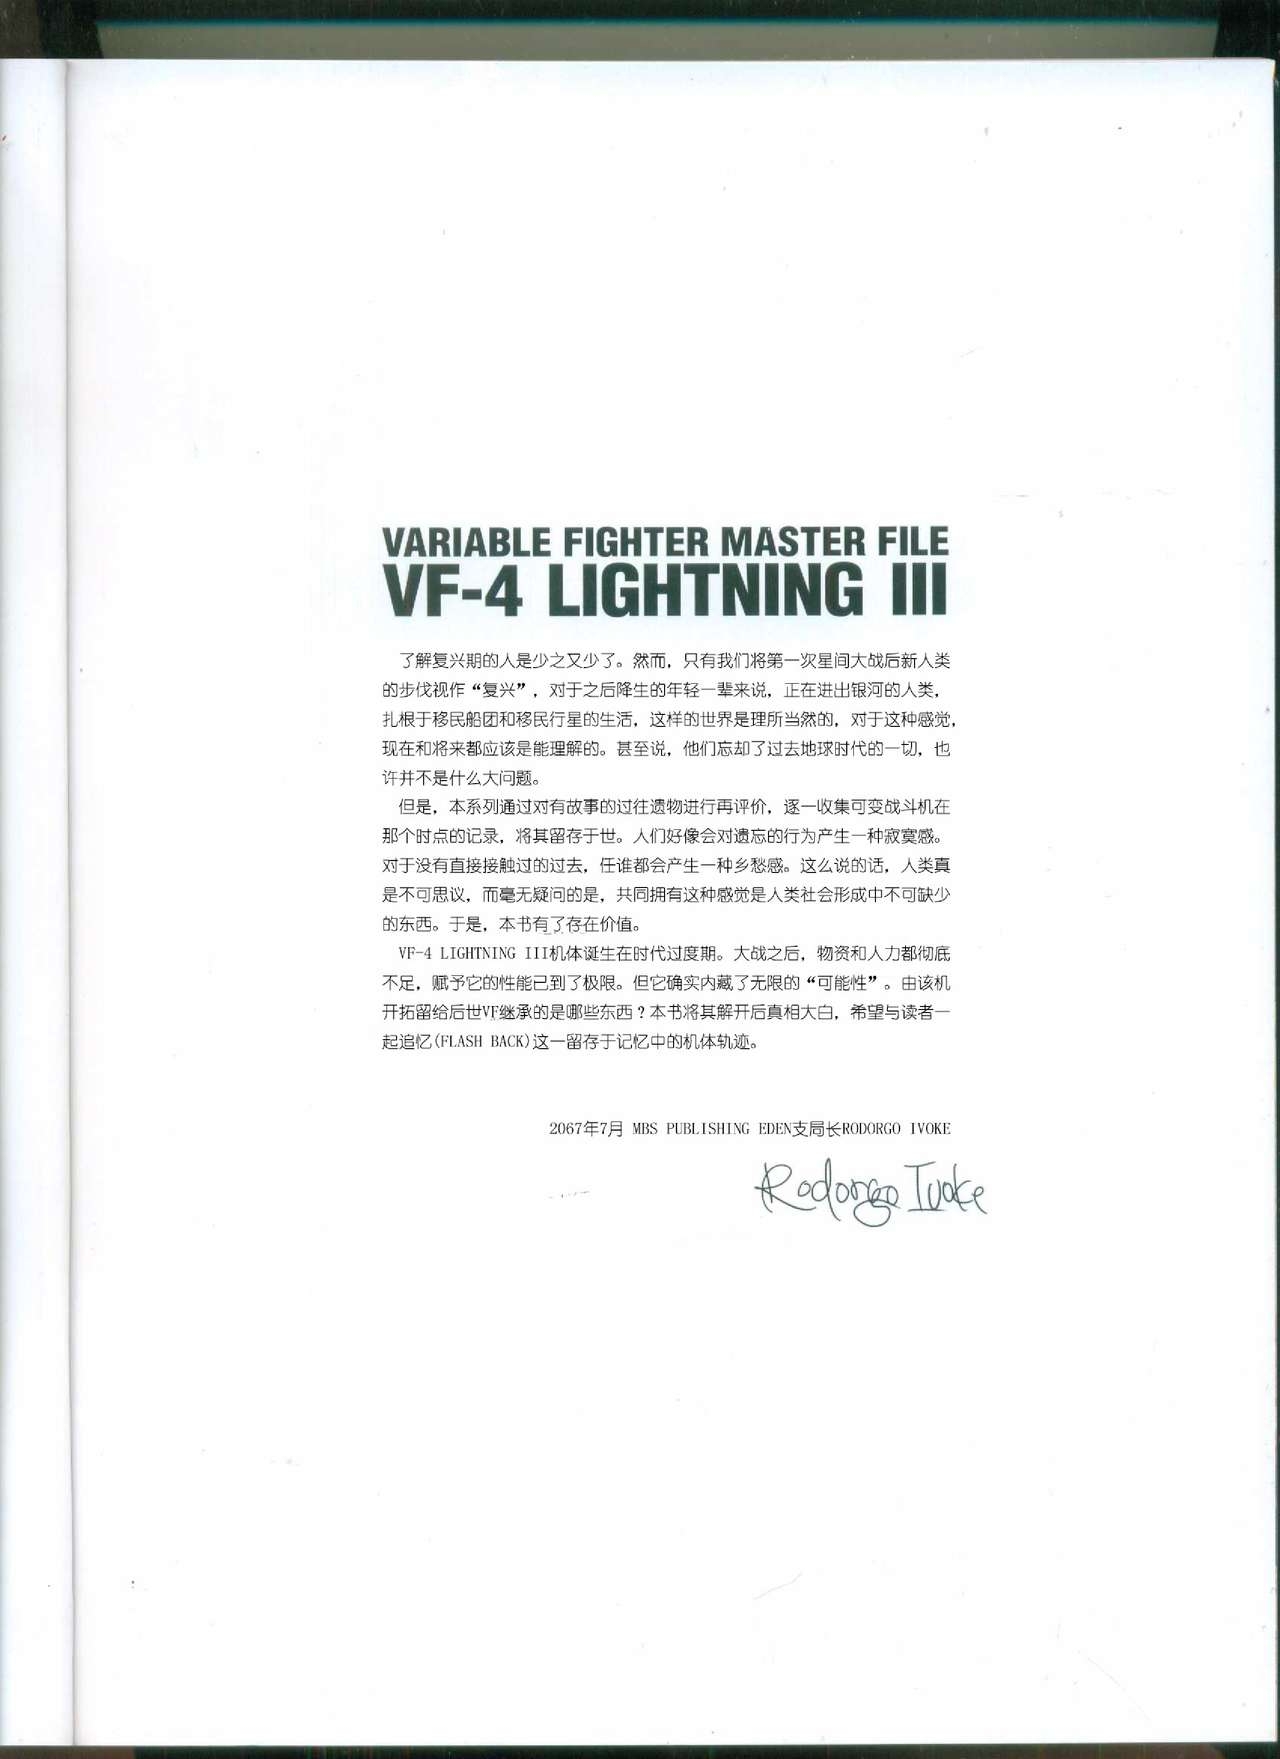 Variable Fighter Master File VF-4 Lightning III(CN) 2